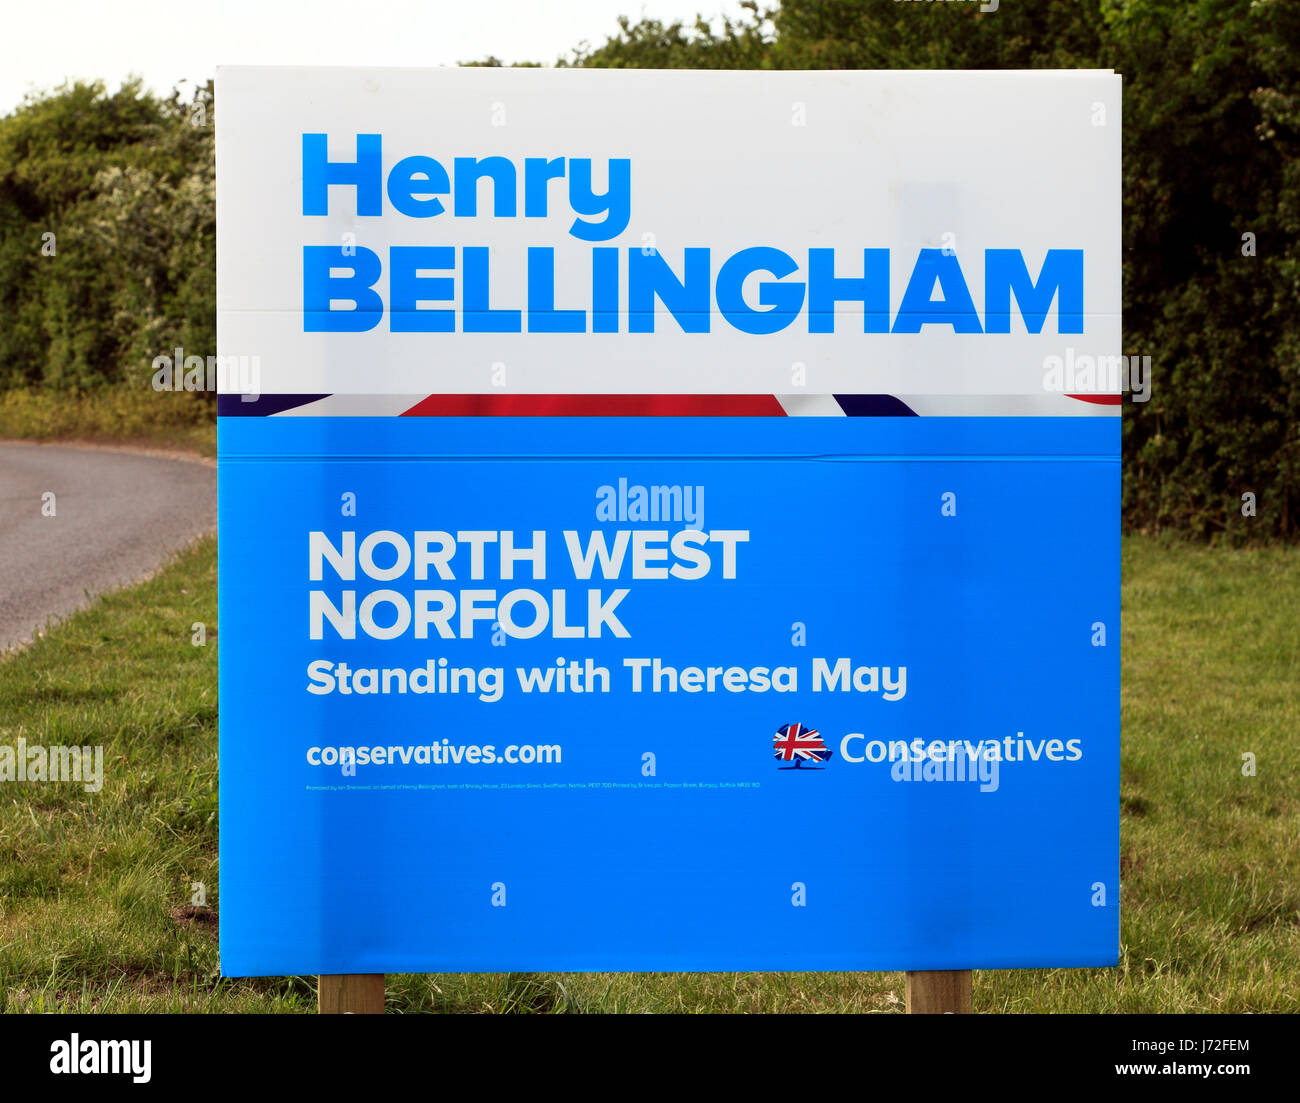 Allgemeine Wahl UK, Juni 2017, Sir Henry Bellingham, konservativen Kandidaten, North West Norfolk Wahlkreis, am Straßenrand Poster, Plakate, Kandidaten Stockfoto